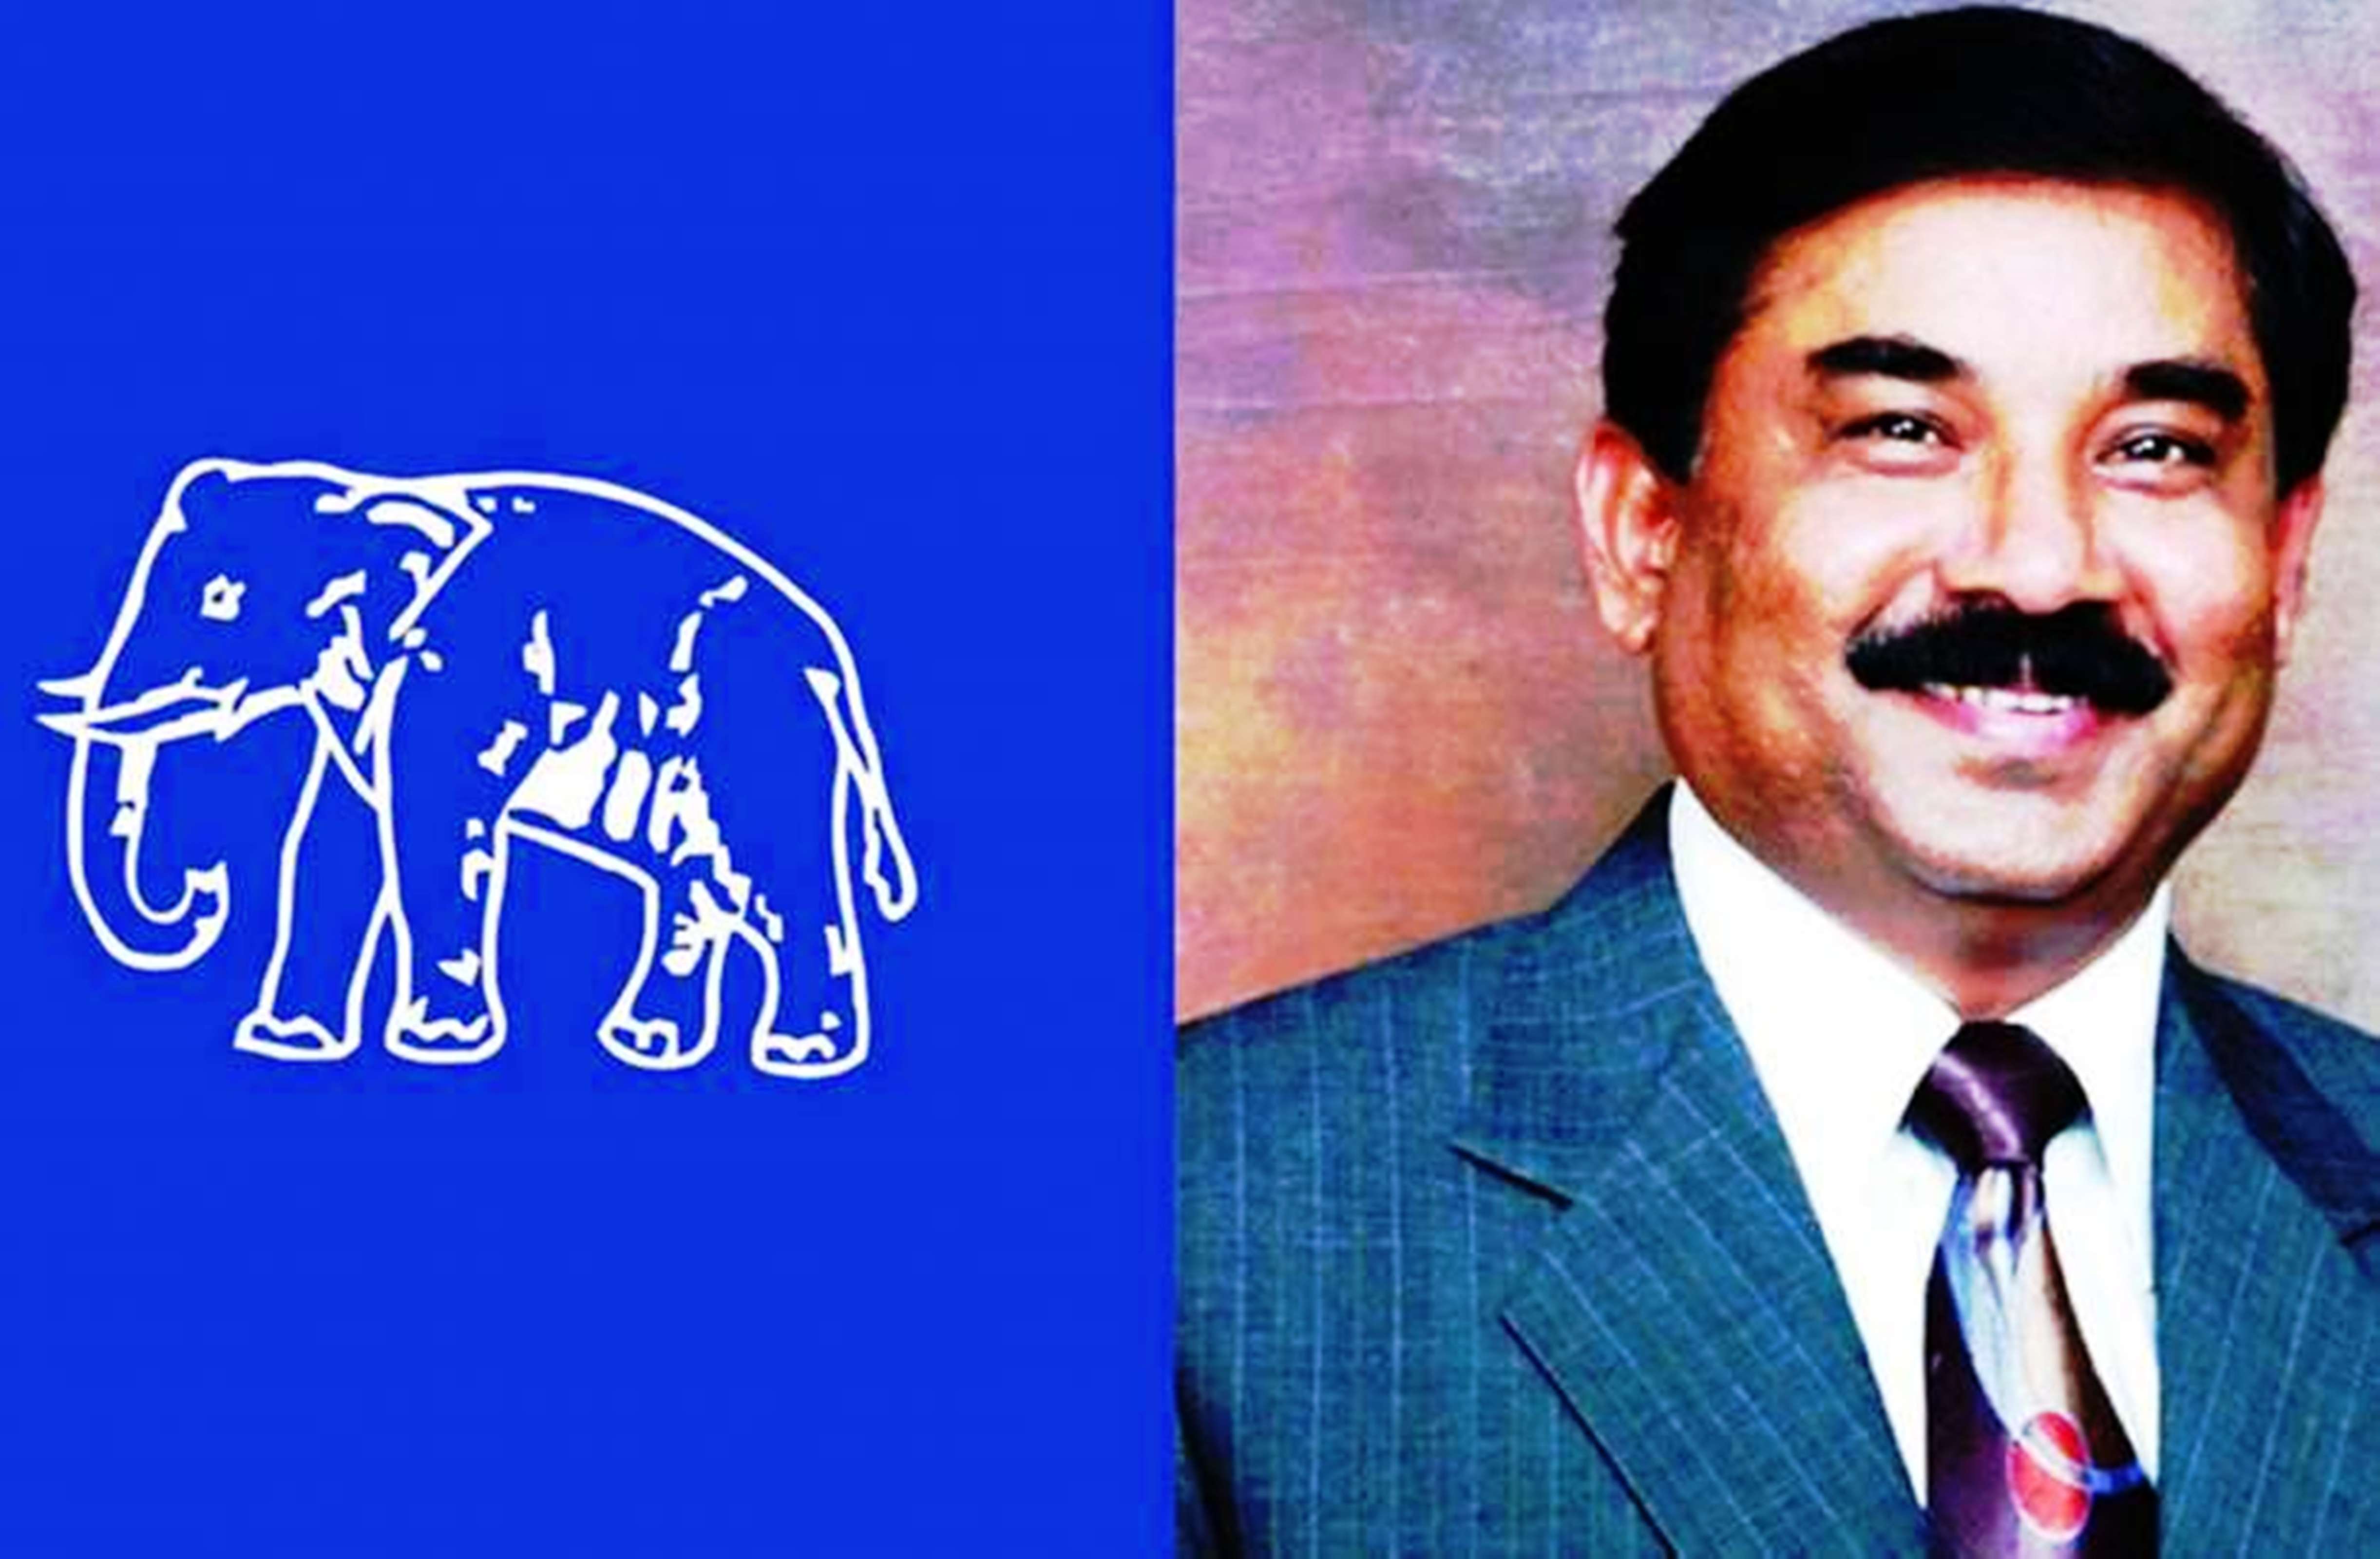 मायावती ने डॉक्टर अशोक सिद्धार्थ को कर्नाटक की सौंपी थी जिम्मेदारी, पहली बार दक्षिण में जीता हाथी